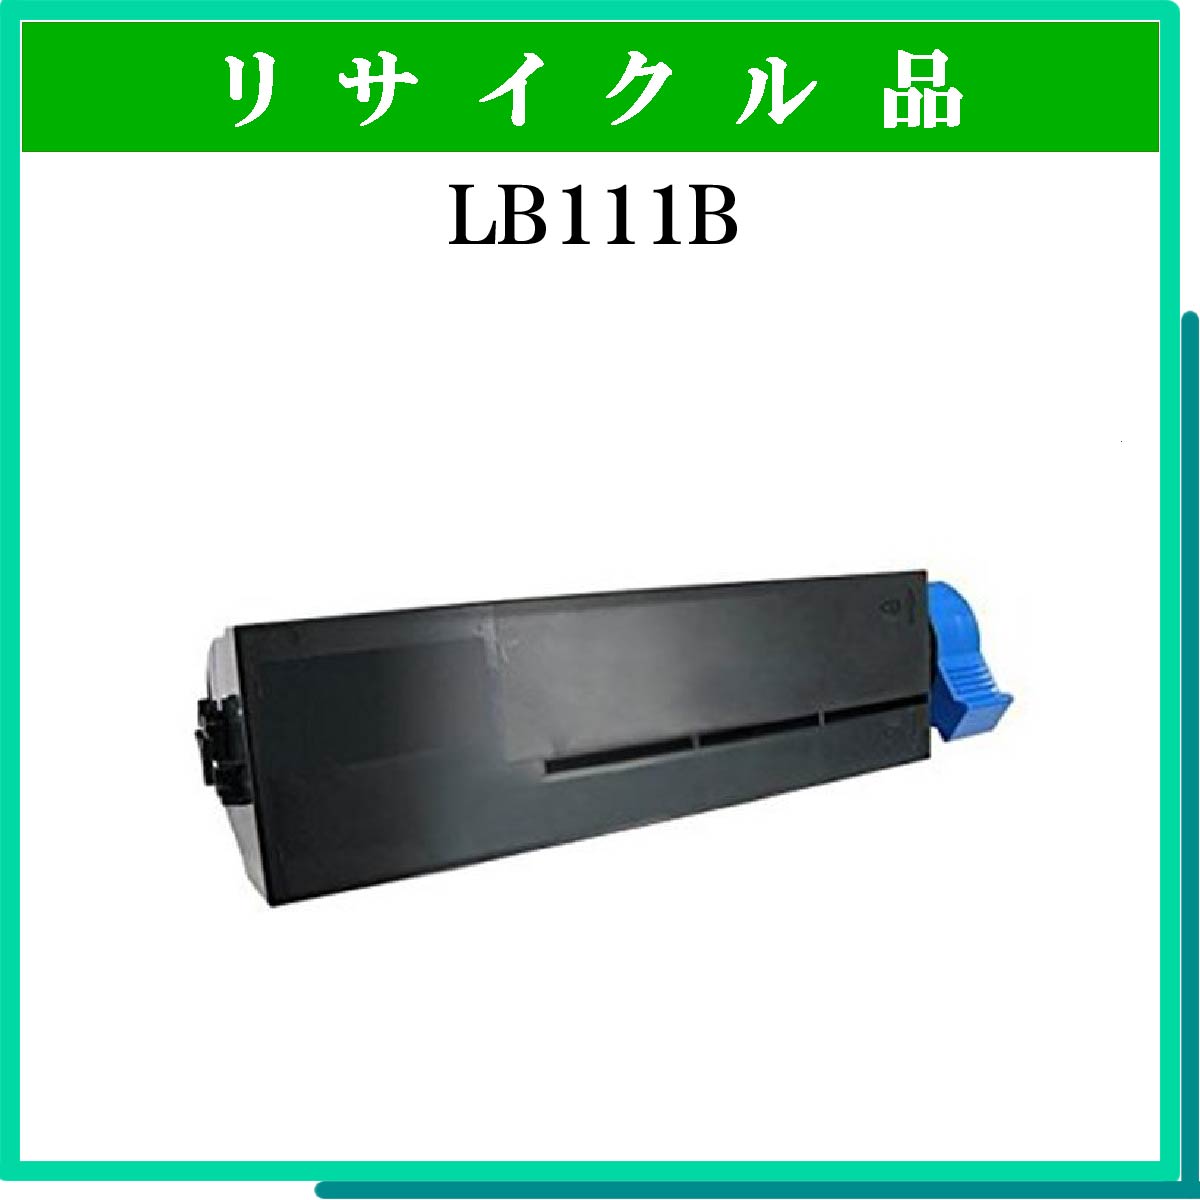 LB111B